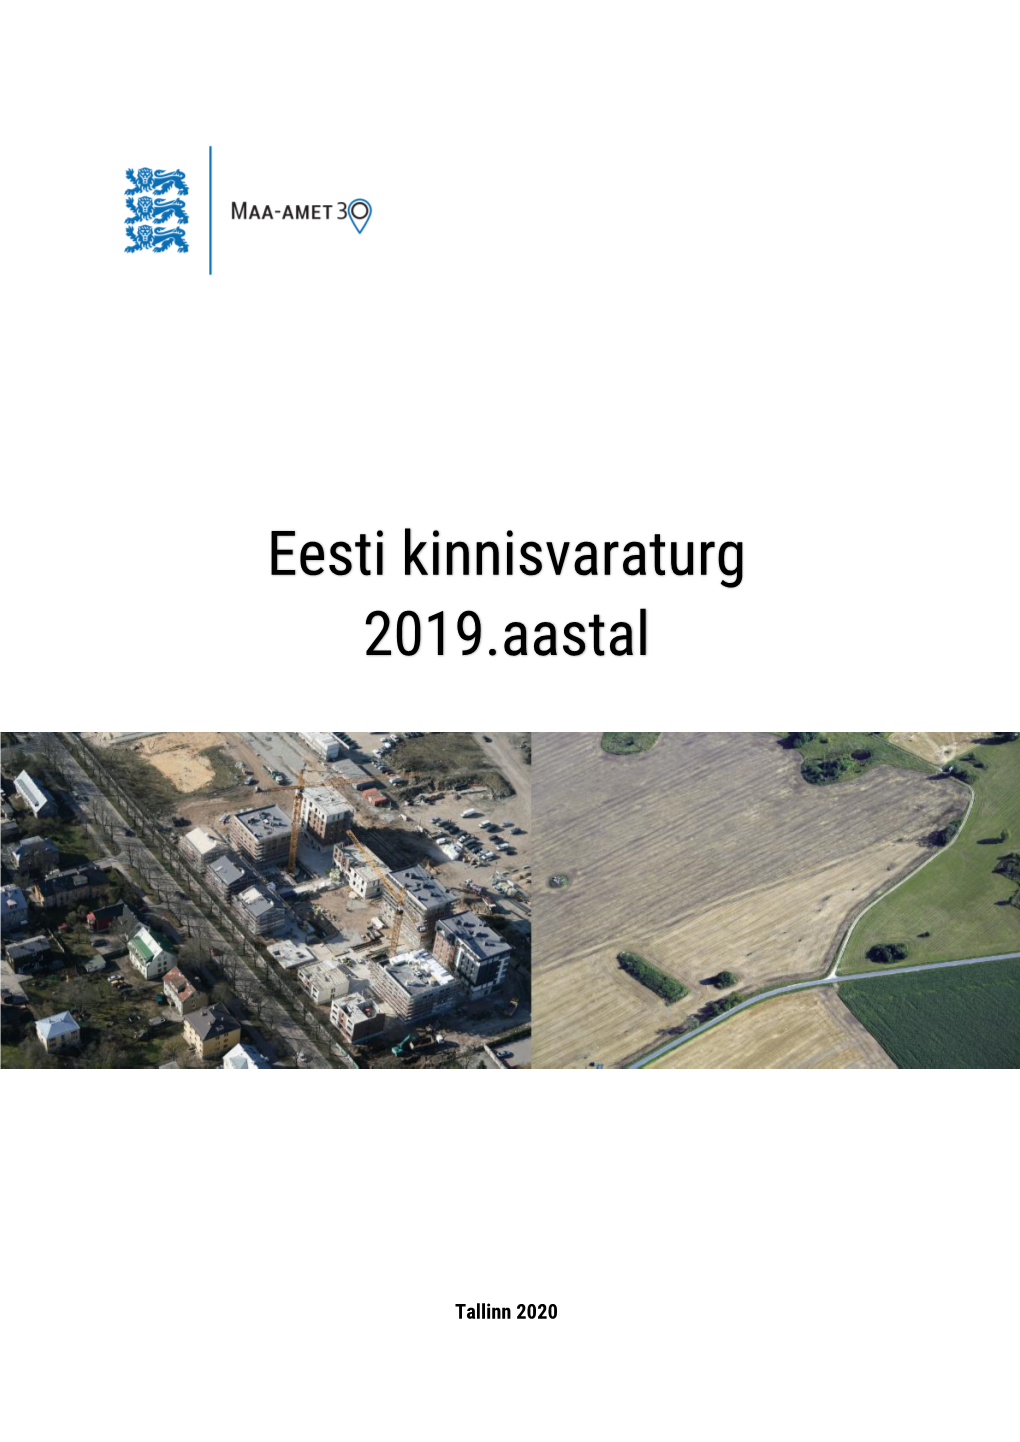 Eesti Kinnisvaraturg 2019.Aastal